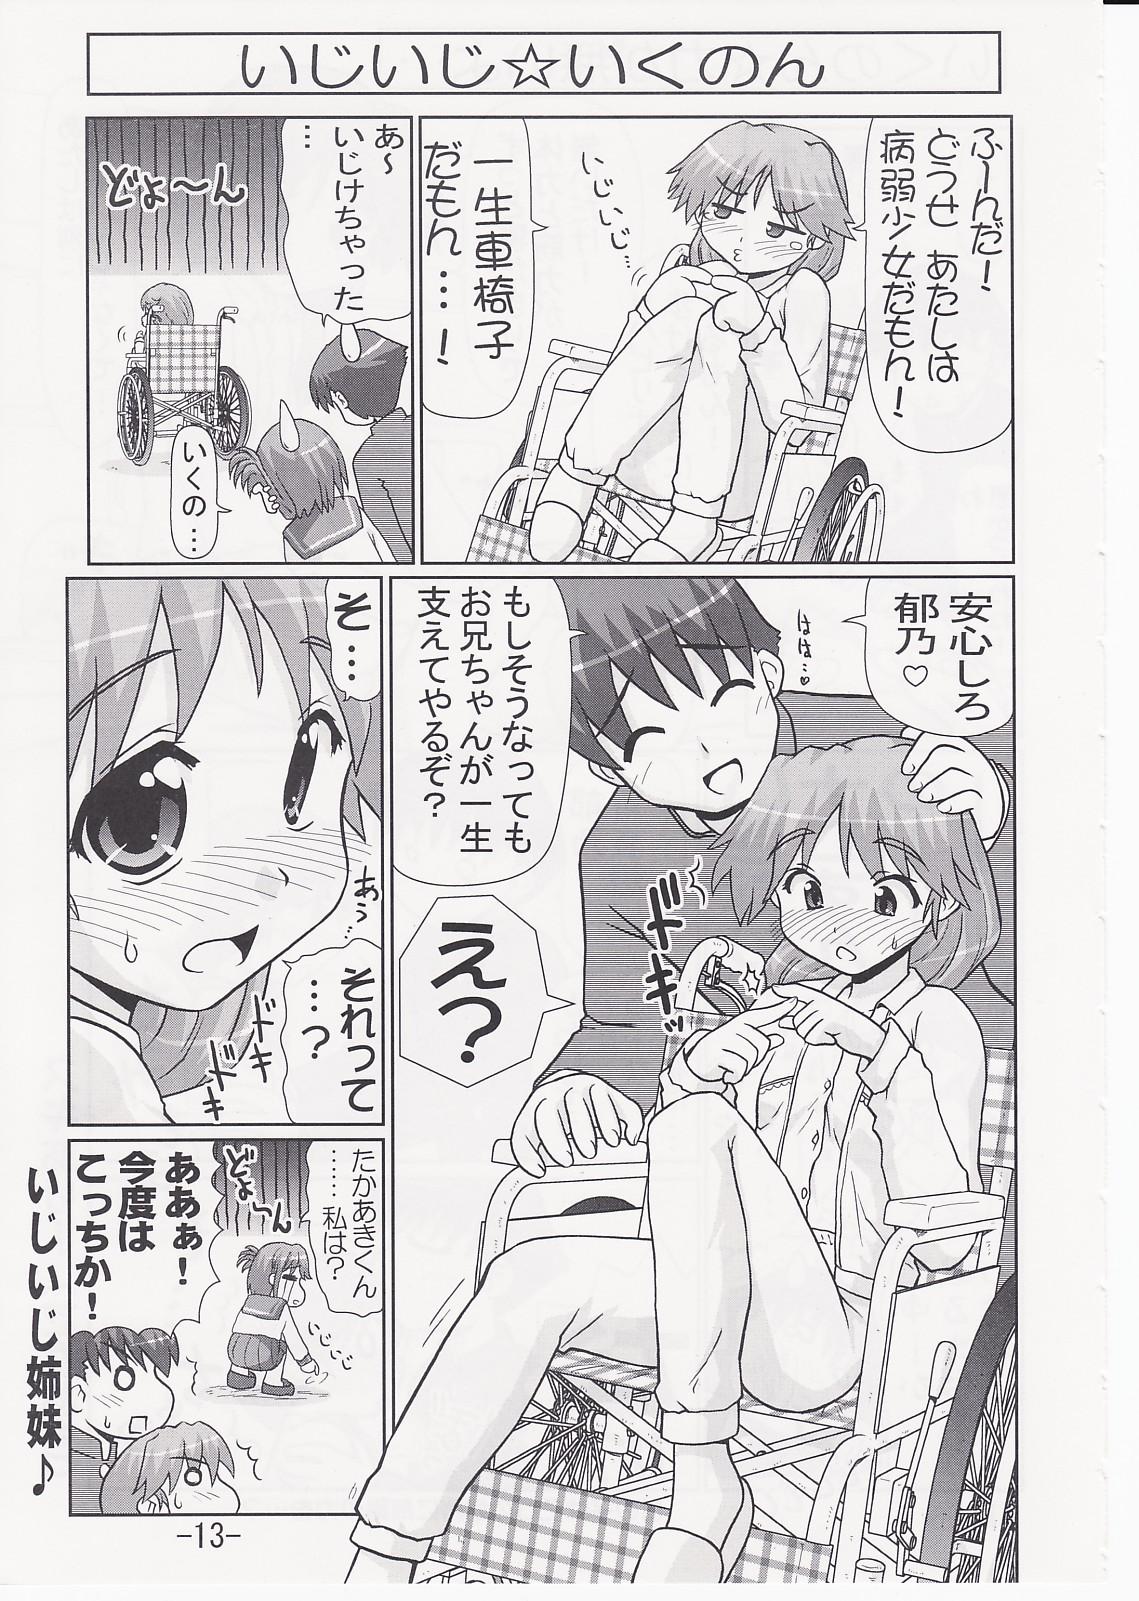 Girlnextdoor Ikunon Manga 2 - Toheart2 Dick Suckers - Page 12